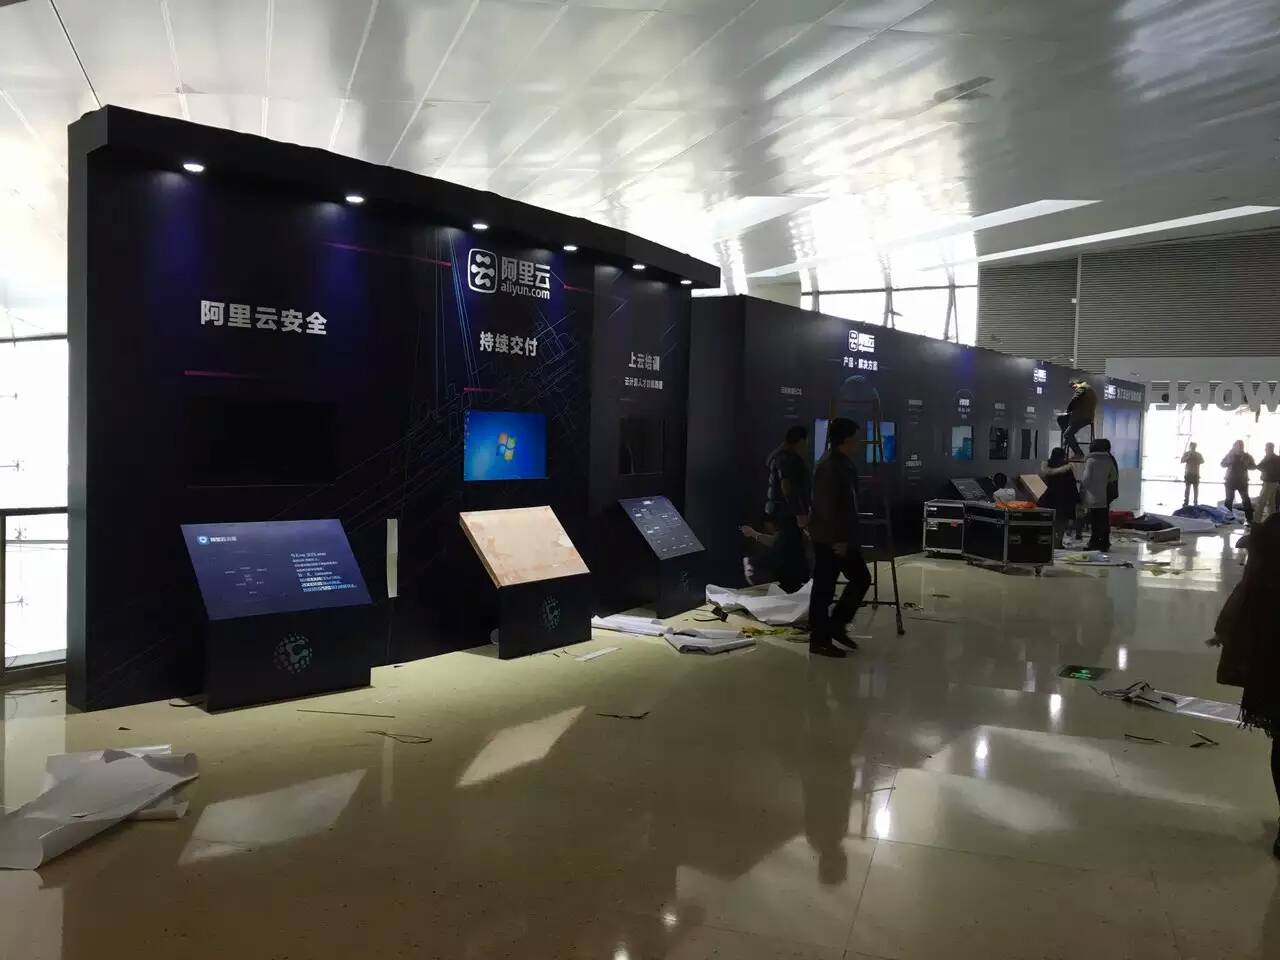 上海崇明年会液晶显示器安装公司 发布会舞台音响租赁 上海 电视机租赁